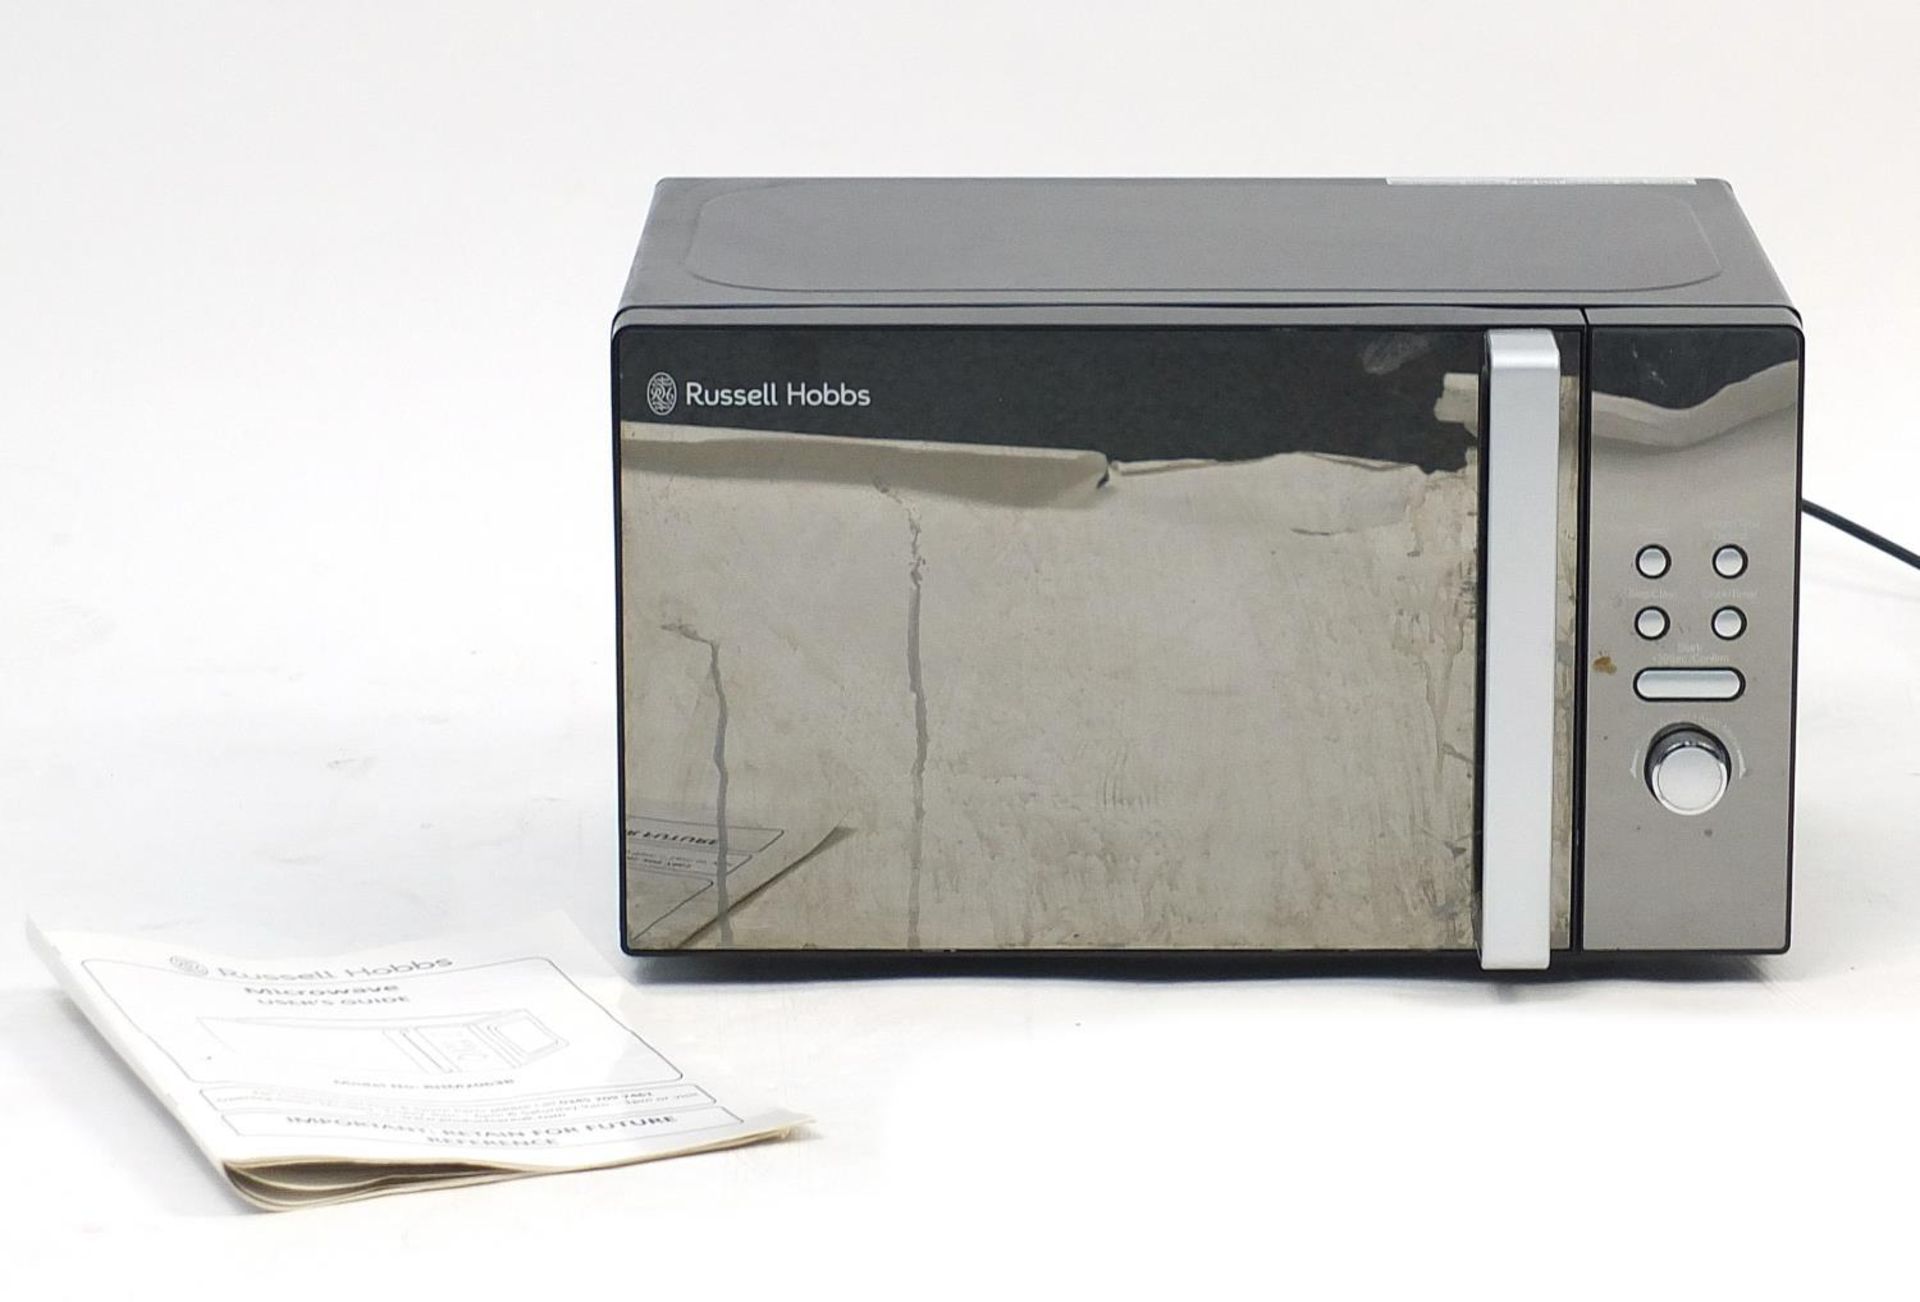 Black Russell Hobbs microwave, model RHM2063B